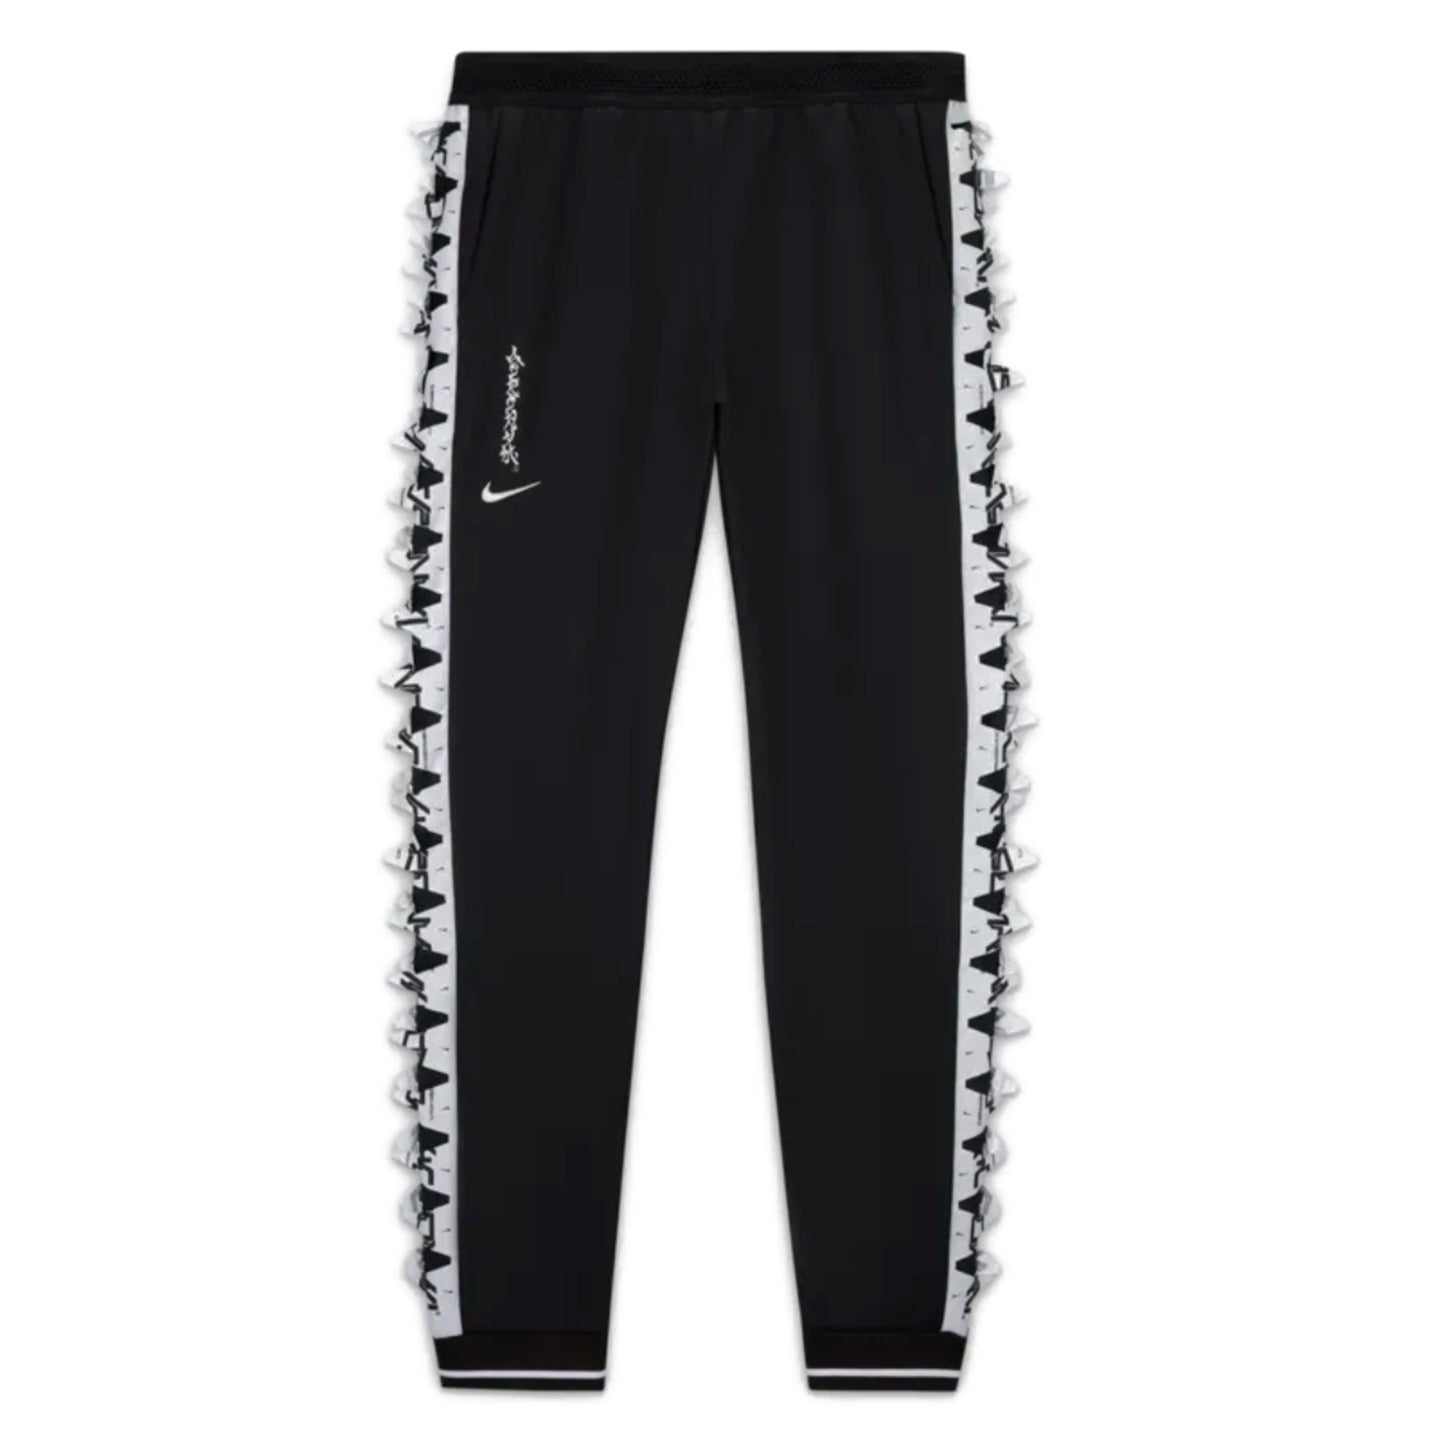 Nike x Acronym Knit Pants Black (C)